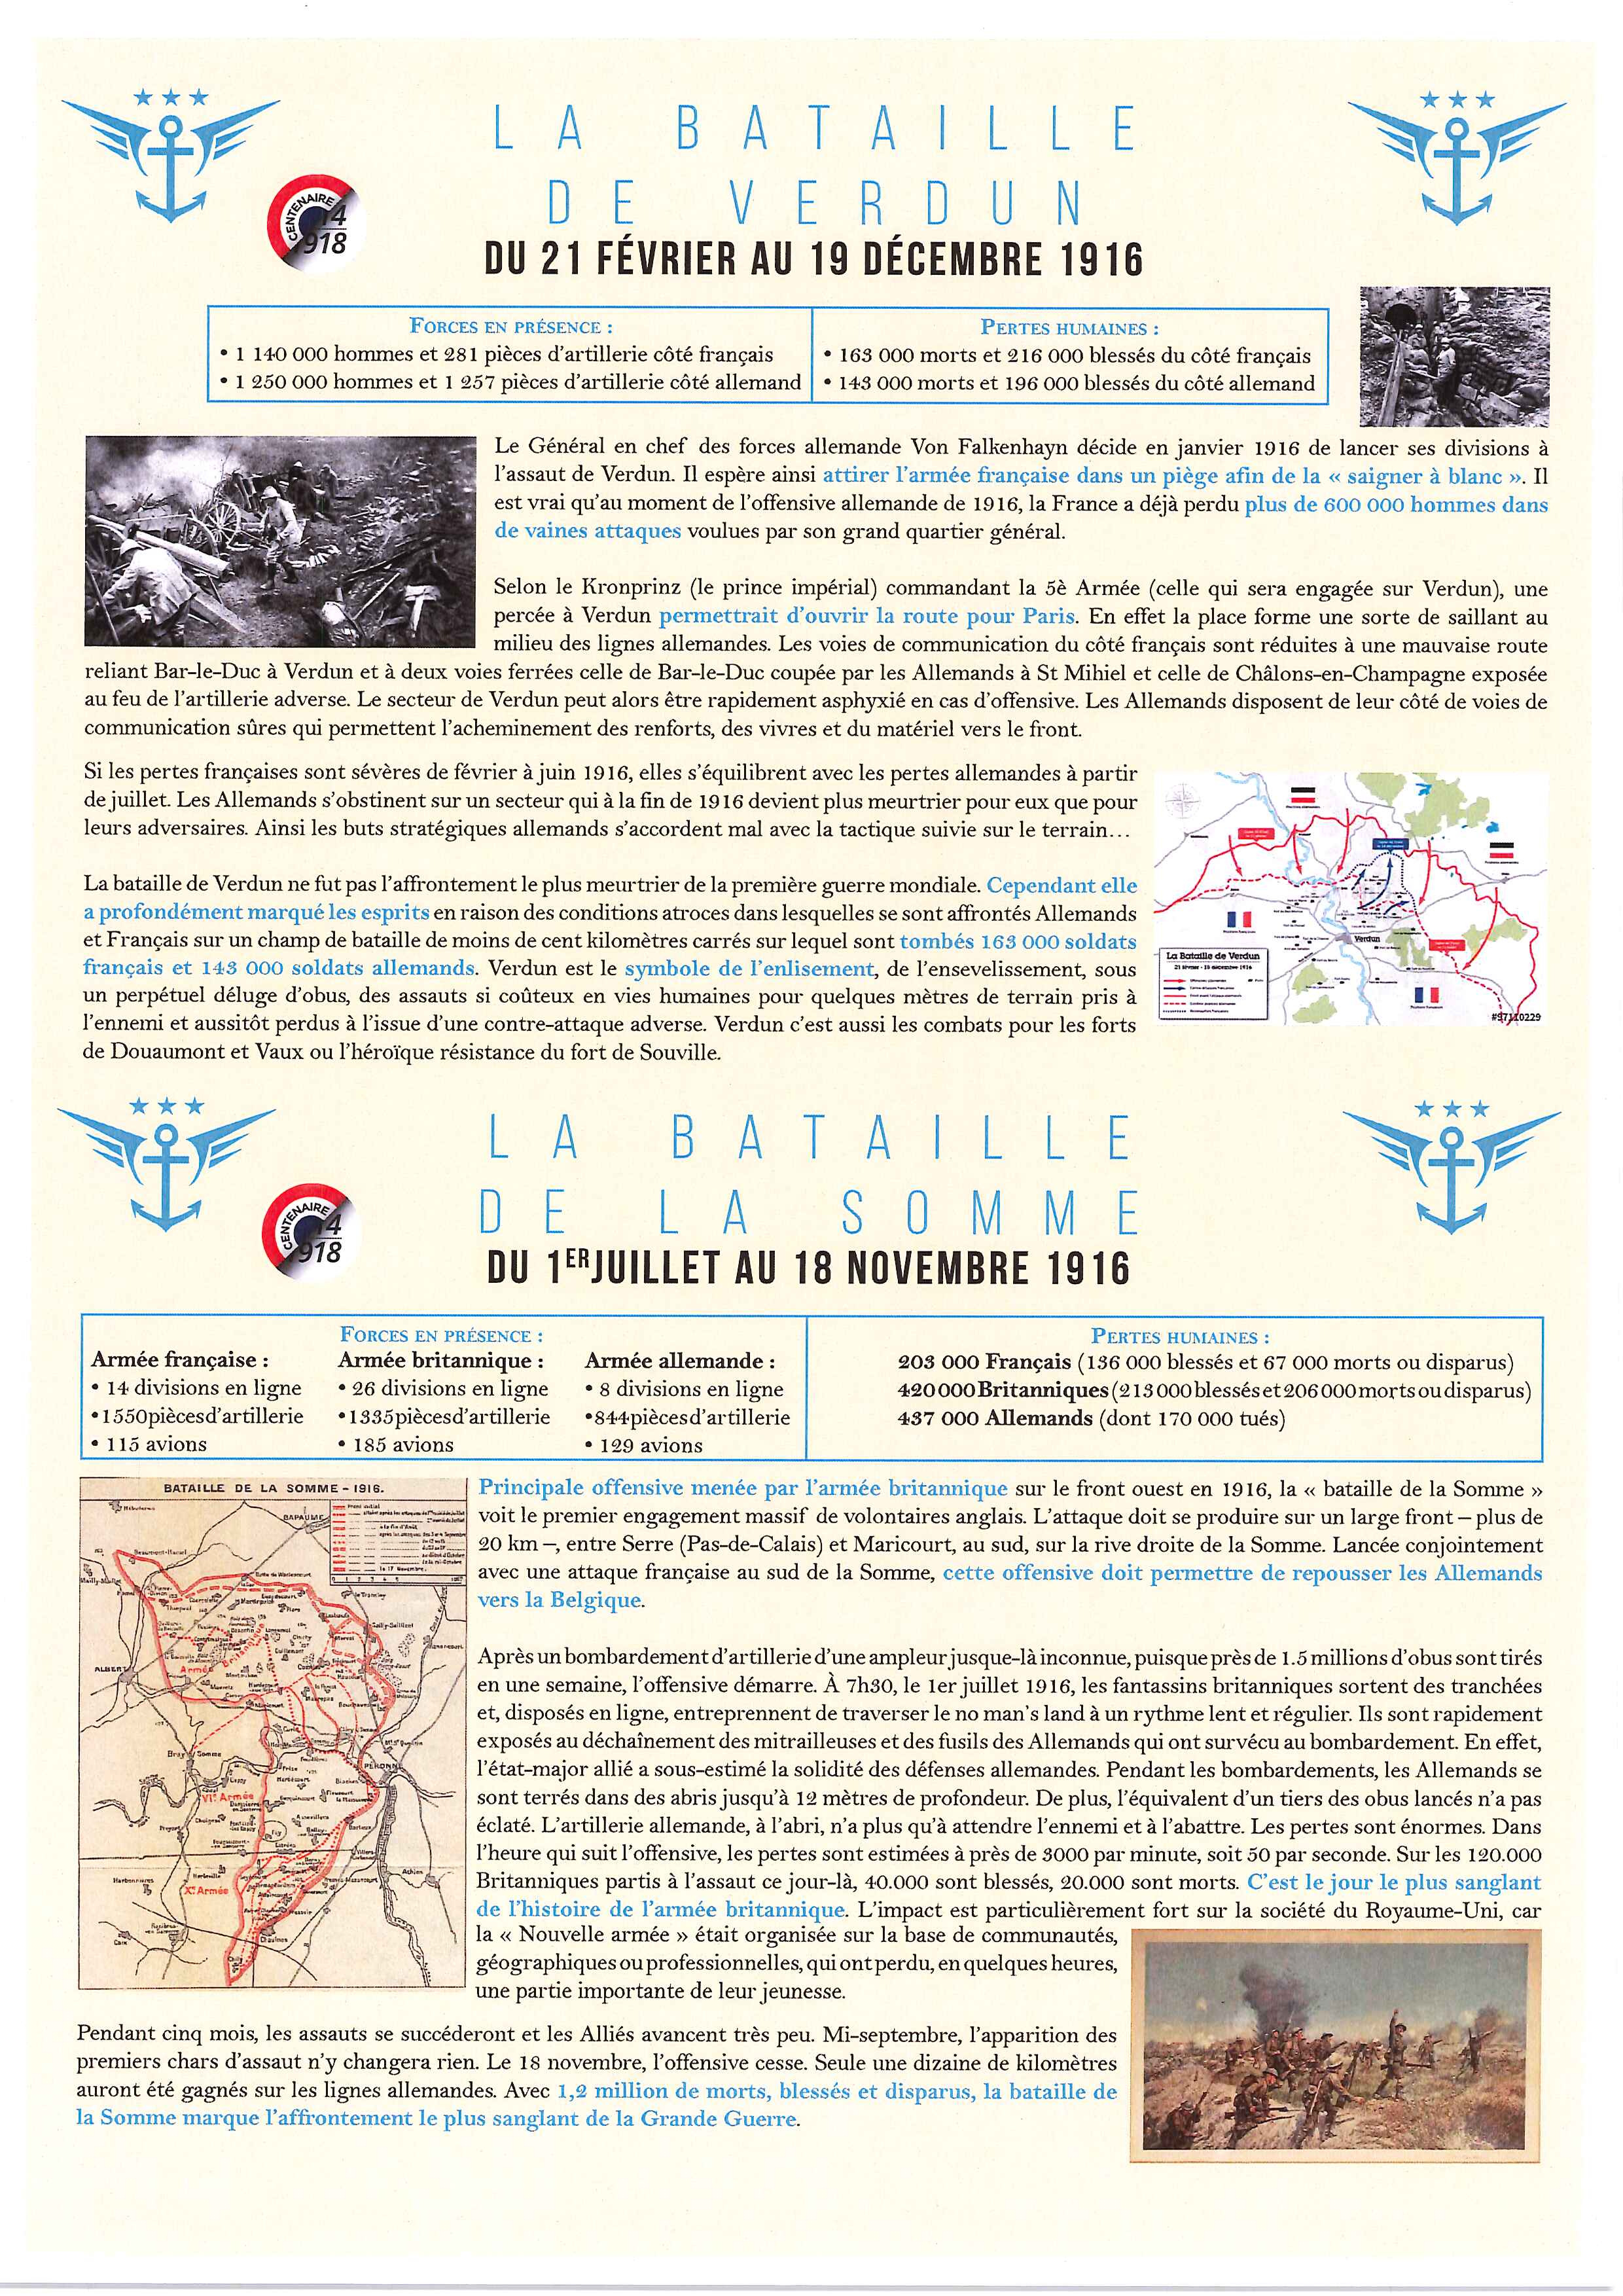 Les batailles de Verdun et de la Somme